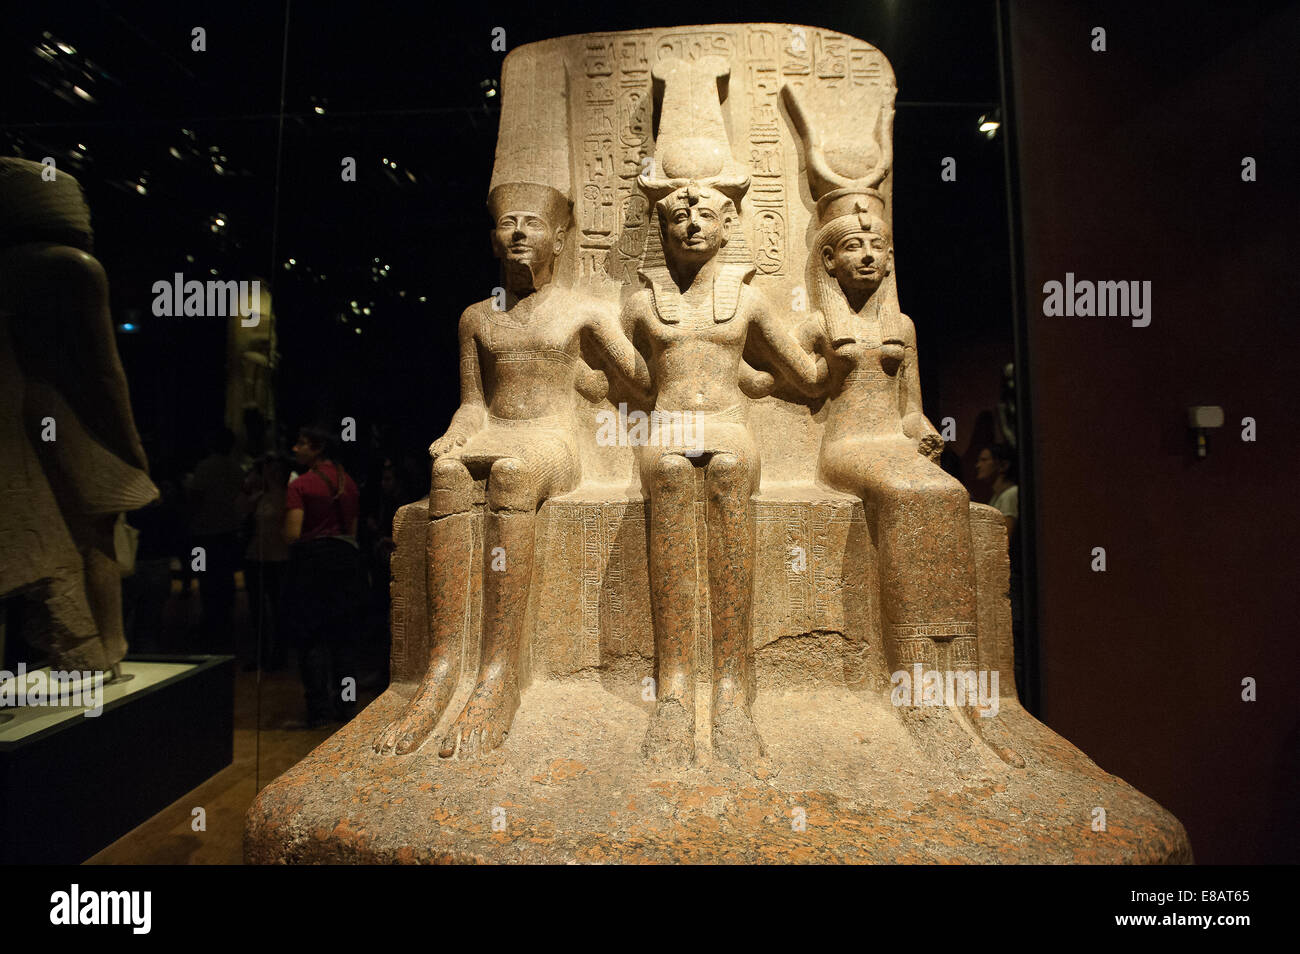 Museo Egipcio de Turín Piamonte Italia estatuas Rey Ramsés II con el dios Amón y la diosa Mut Dinastía XIX reinado de Rames Foto de stock